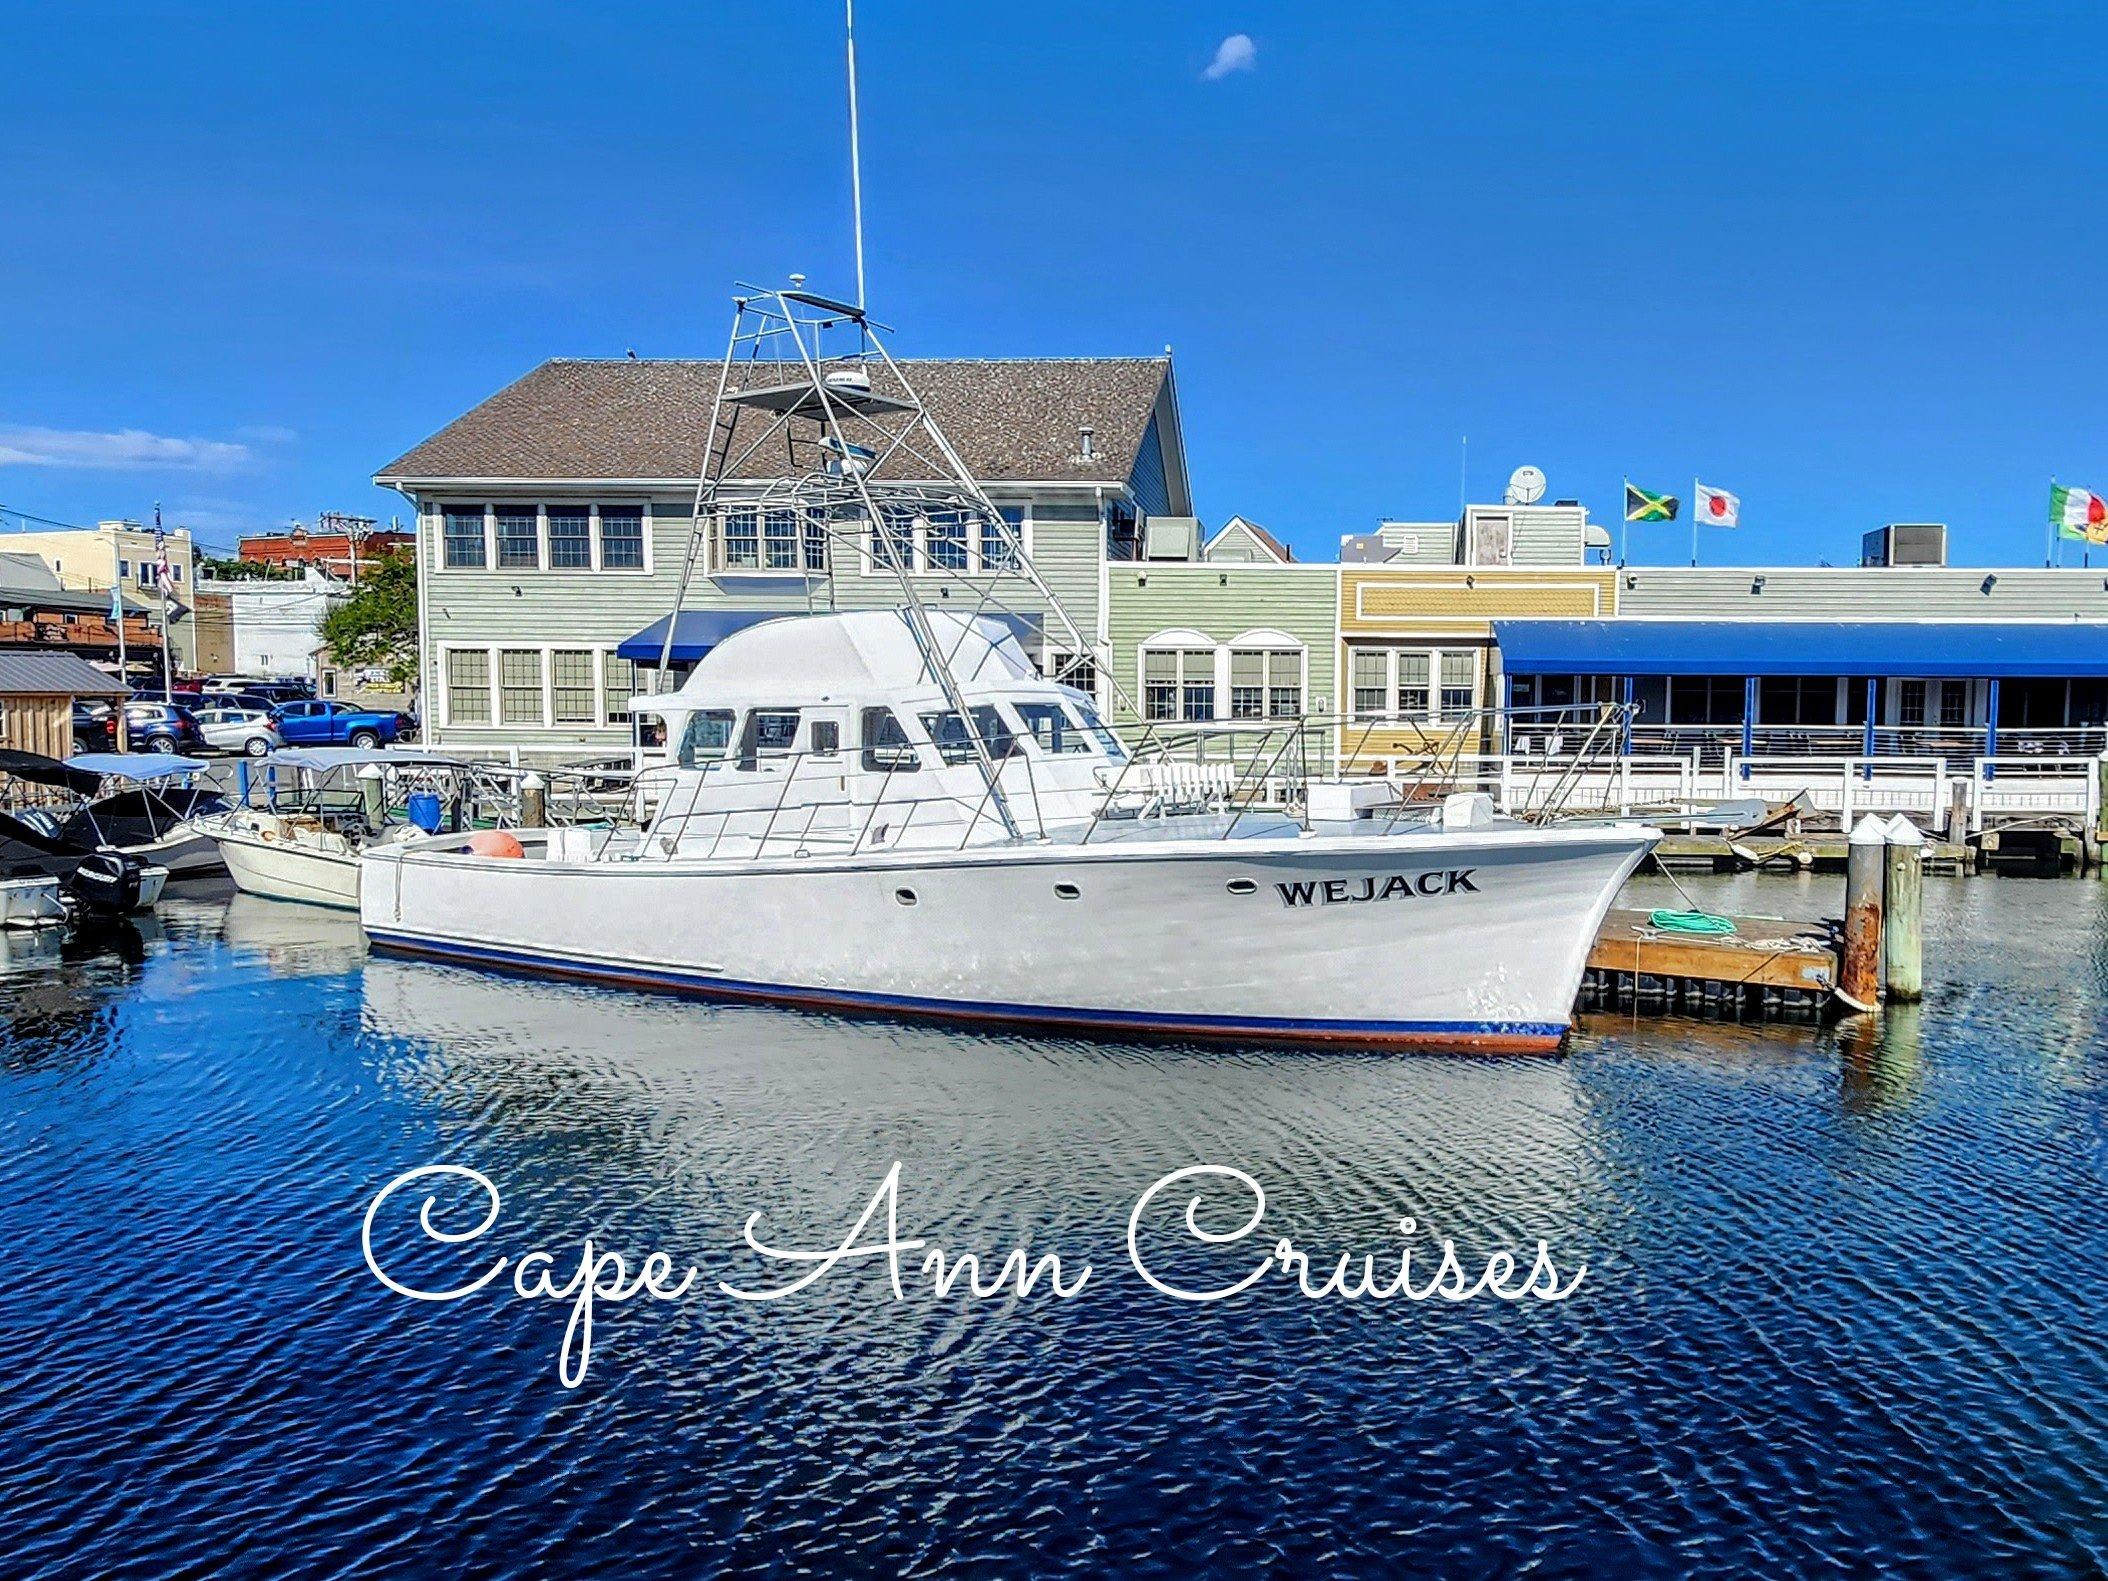 Wejack boat from Cape Ann Cruises in Gloucester, Massachusetts